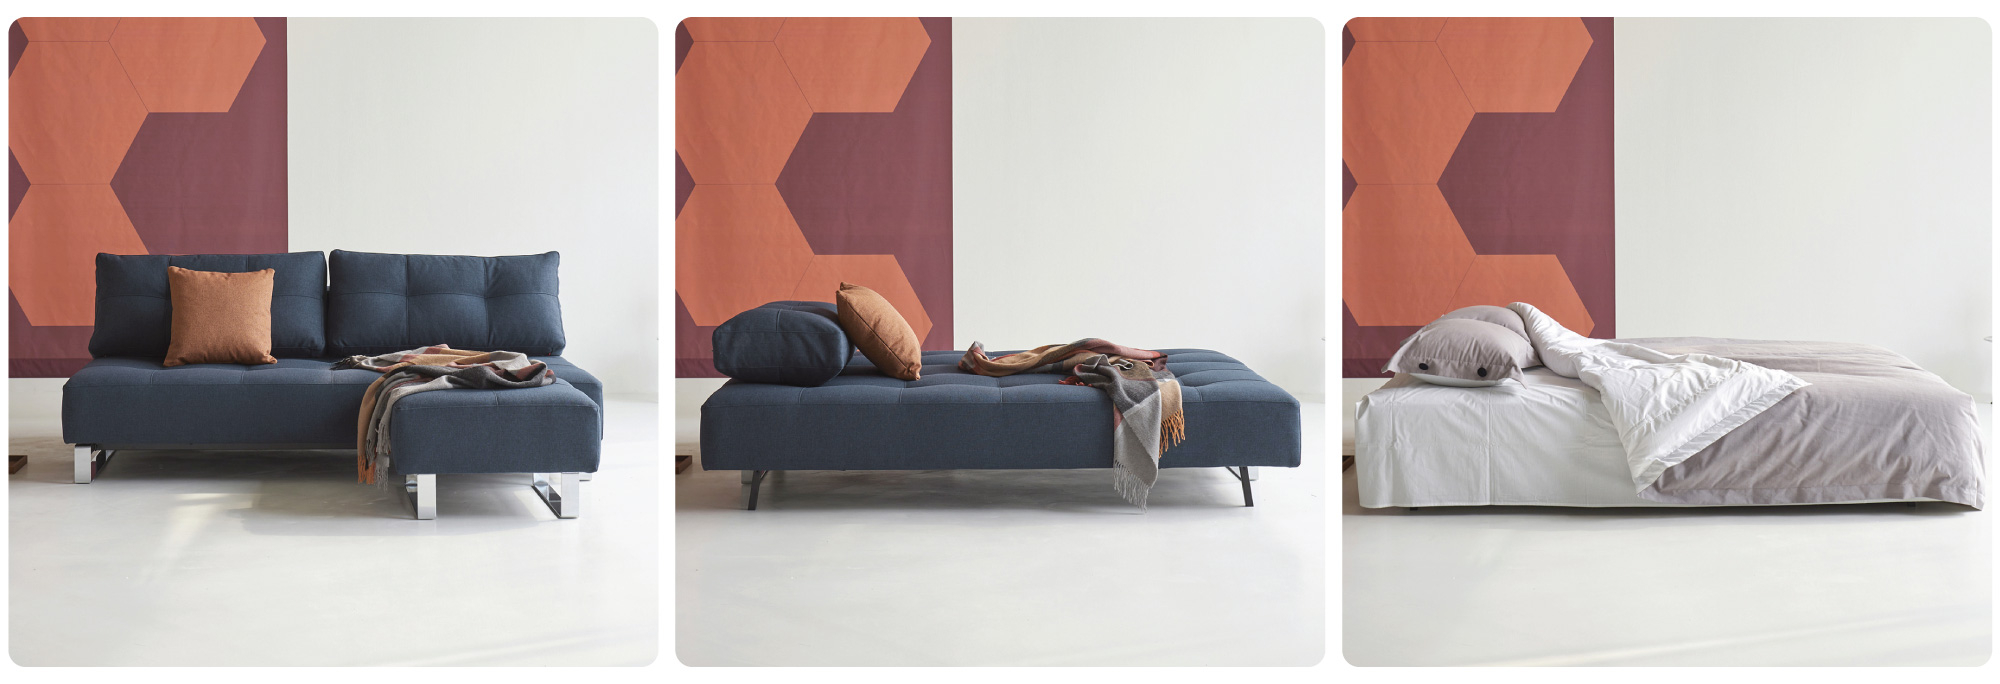 raztegljiv kavč supremax sofa bed